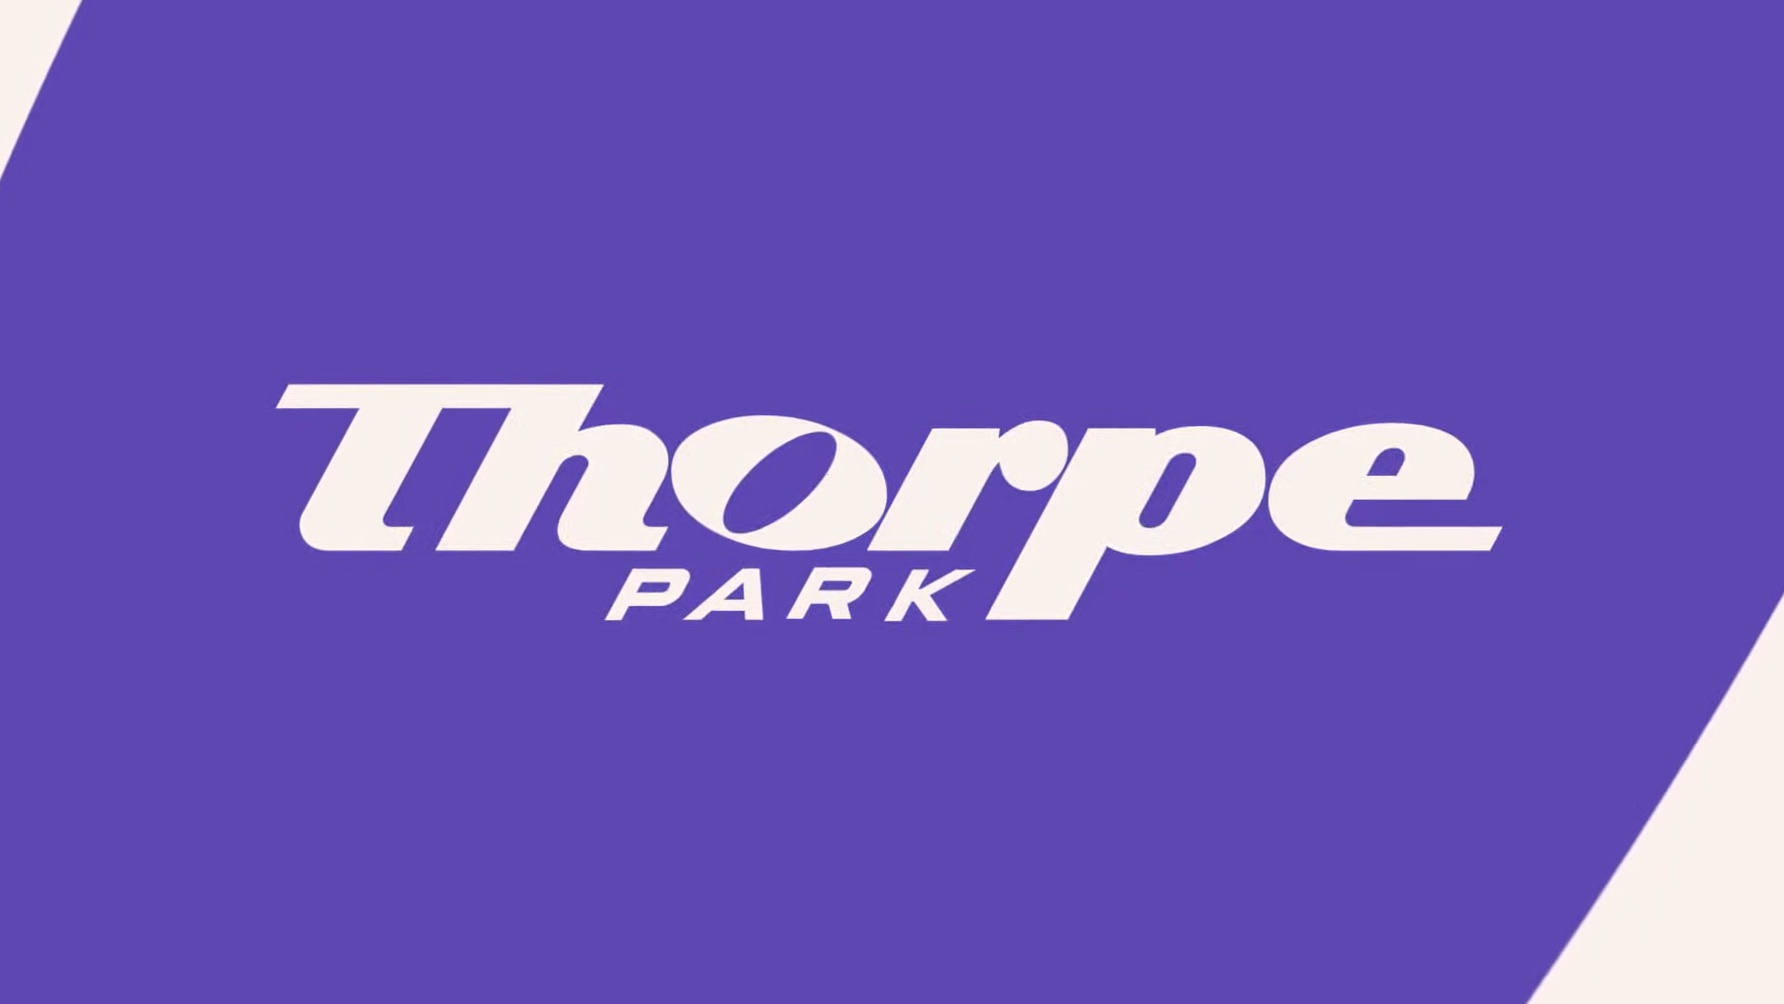 Thorpe Park Reveals New Logo And Branding